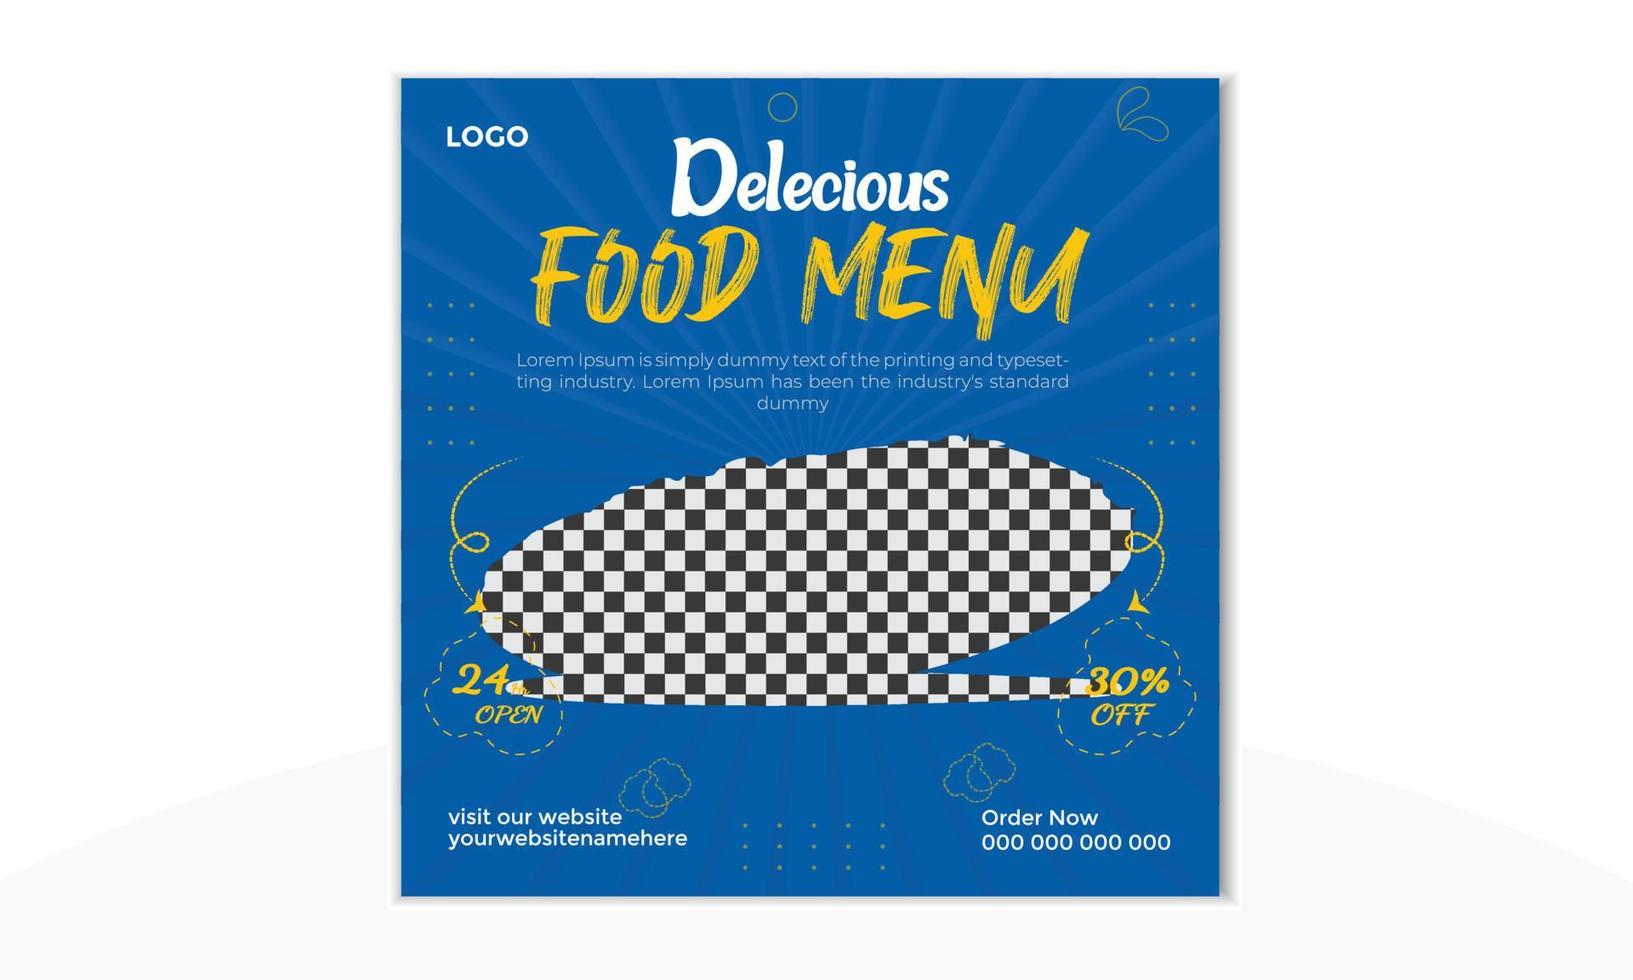 cibo delizioso menu del ristorante post sui social media e banner di promozione della vendita online di pizza fresca, hamburger e pasta. vettore